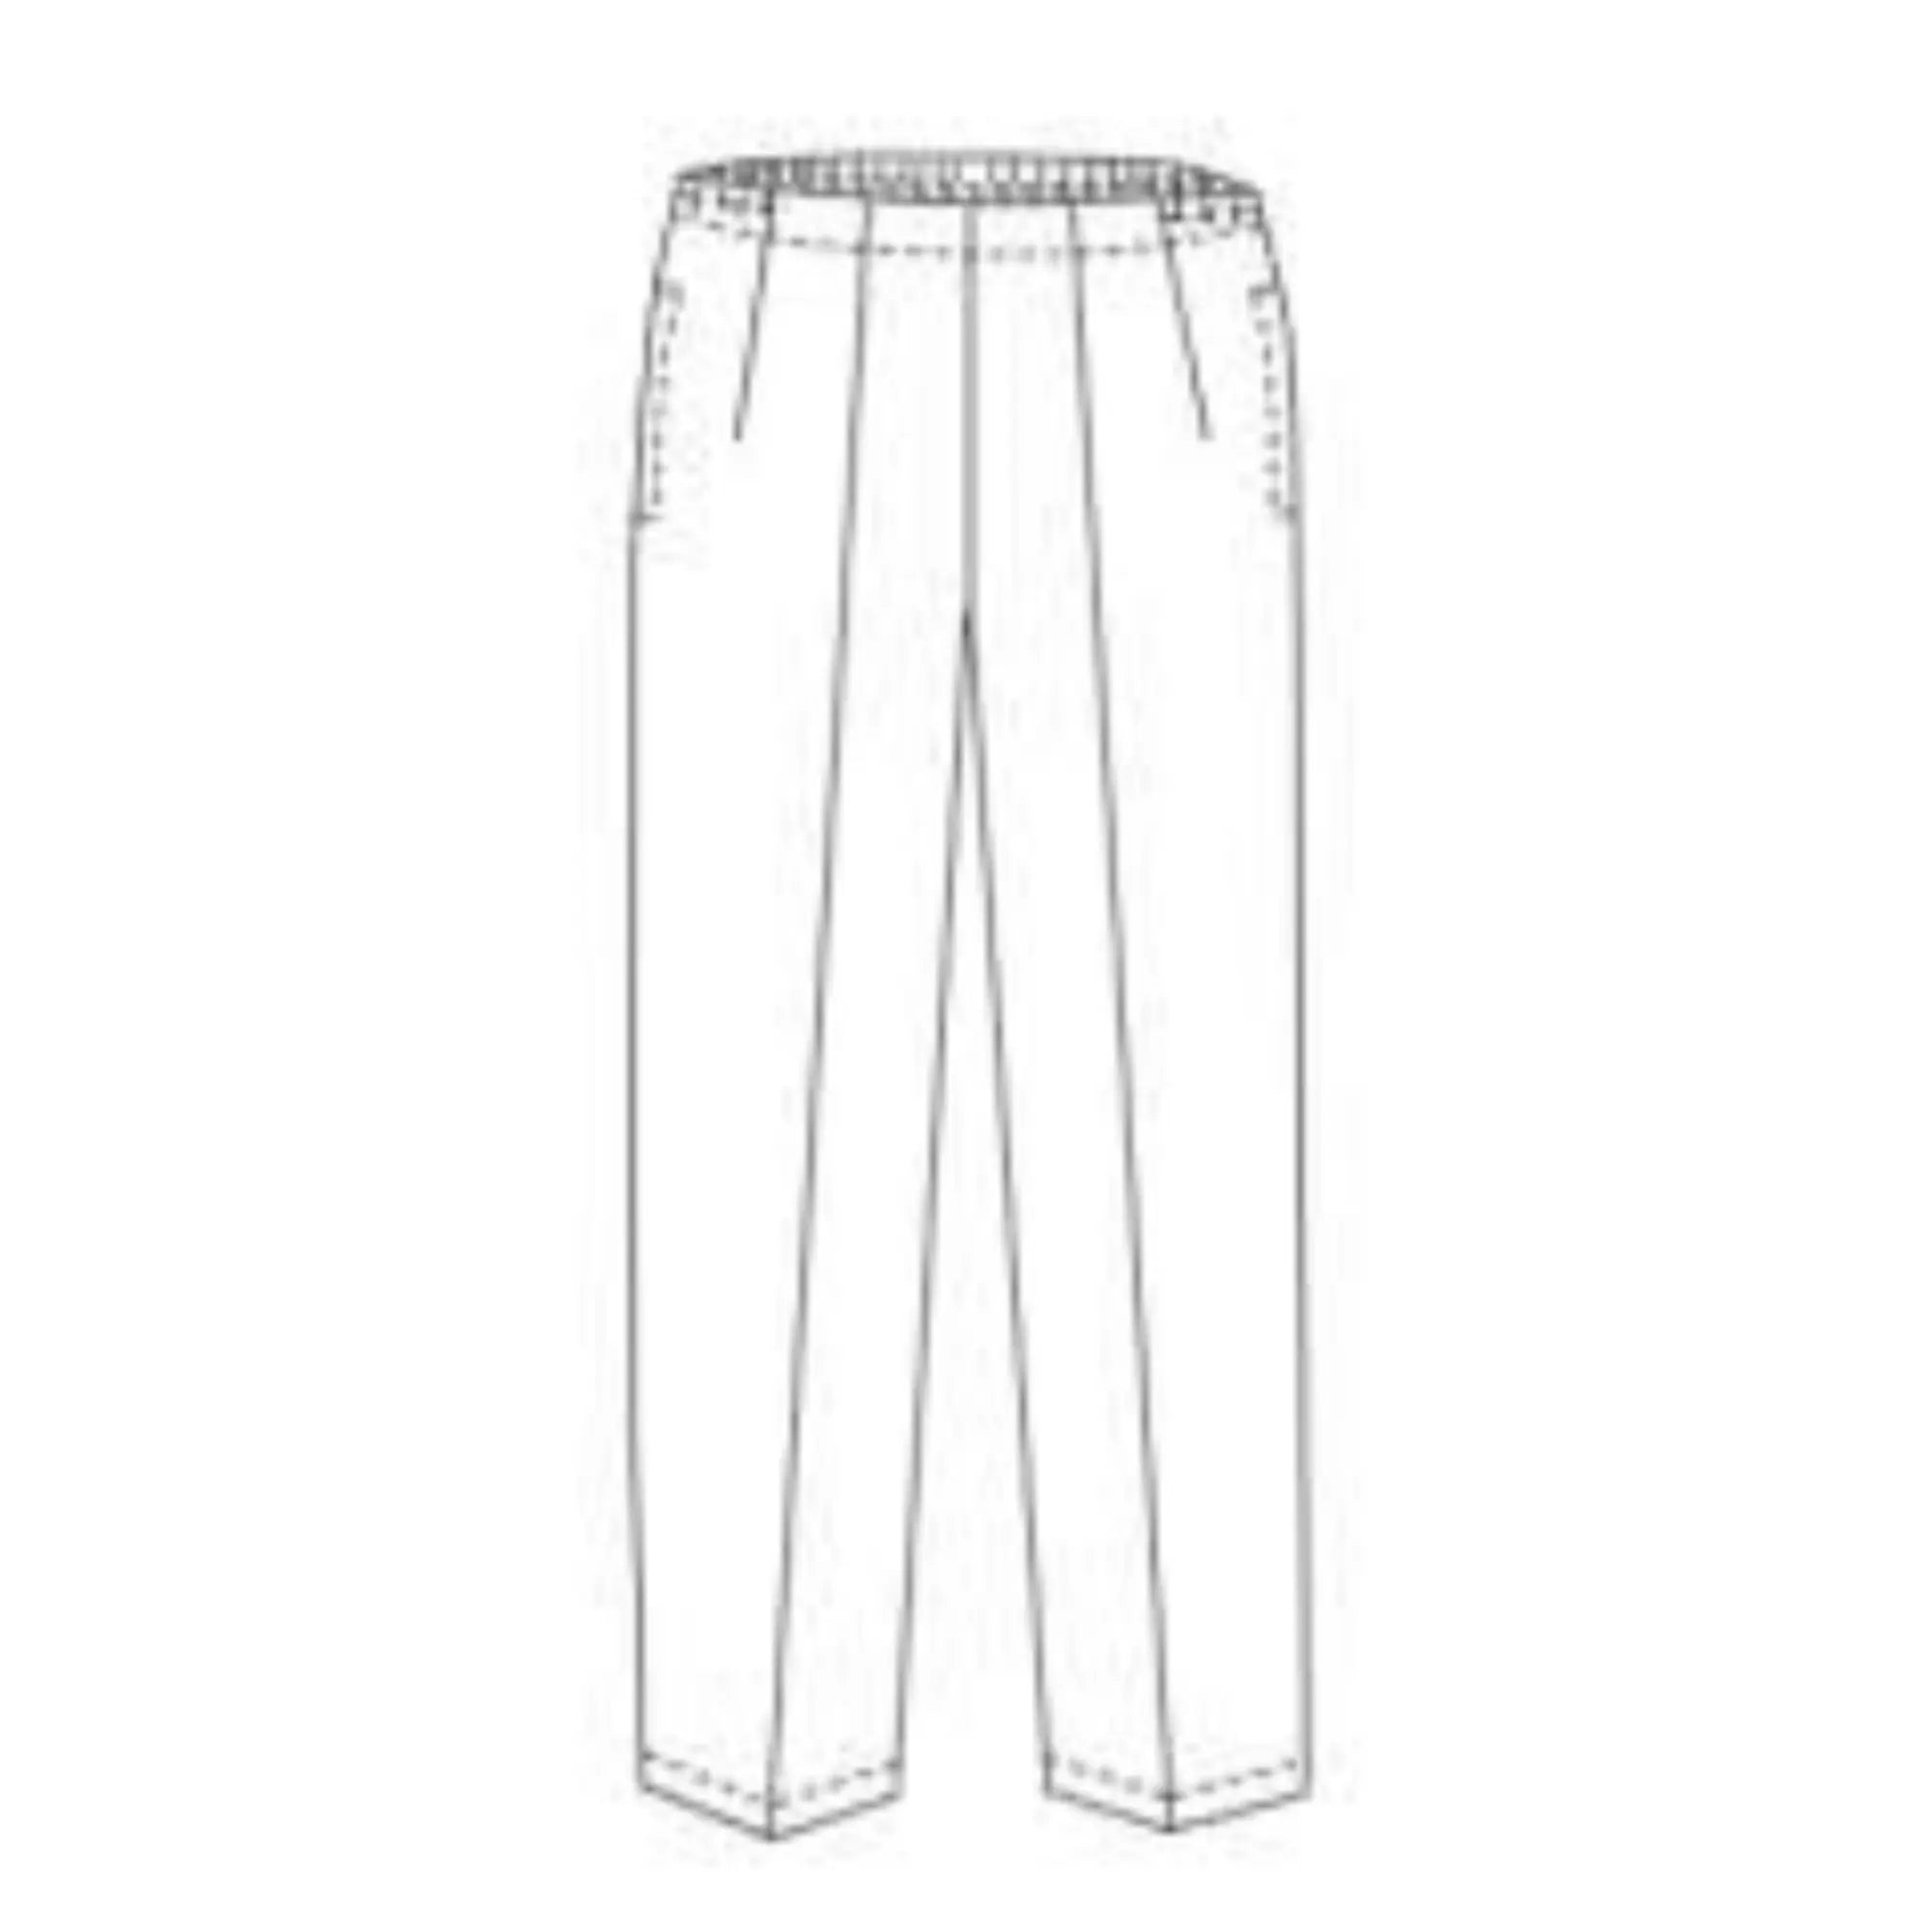 Manhattan - Pantalon - Femme - Ceinture élastique - Avec poches My Blouse